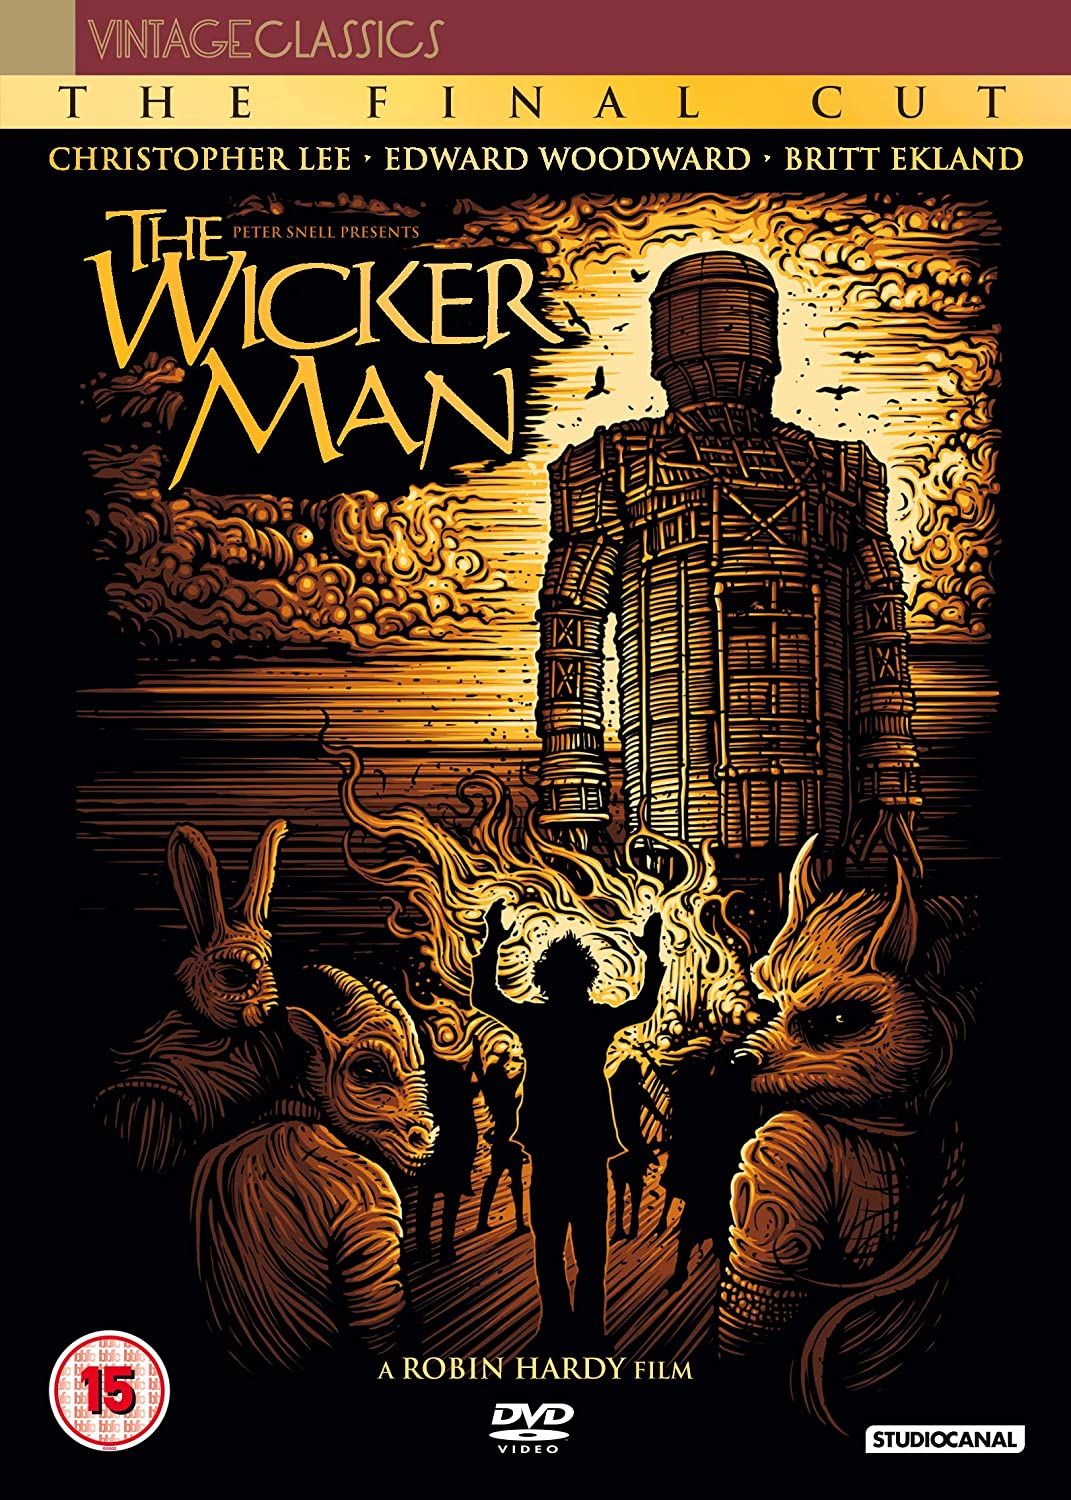 The Wicker Man - Horror/Mystery [DVD]